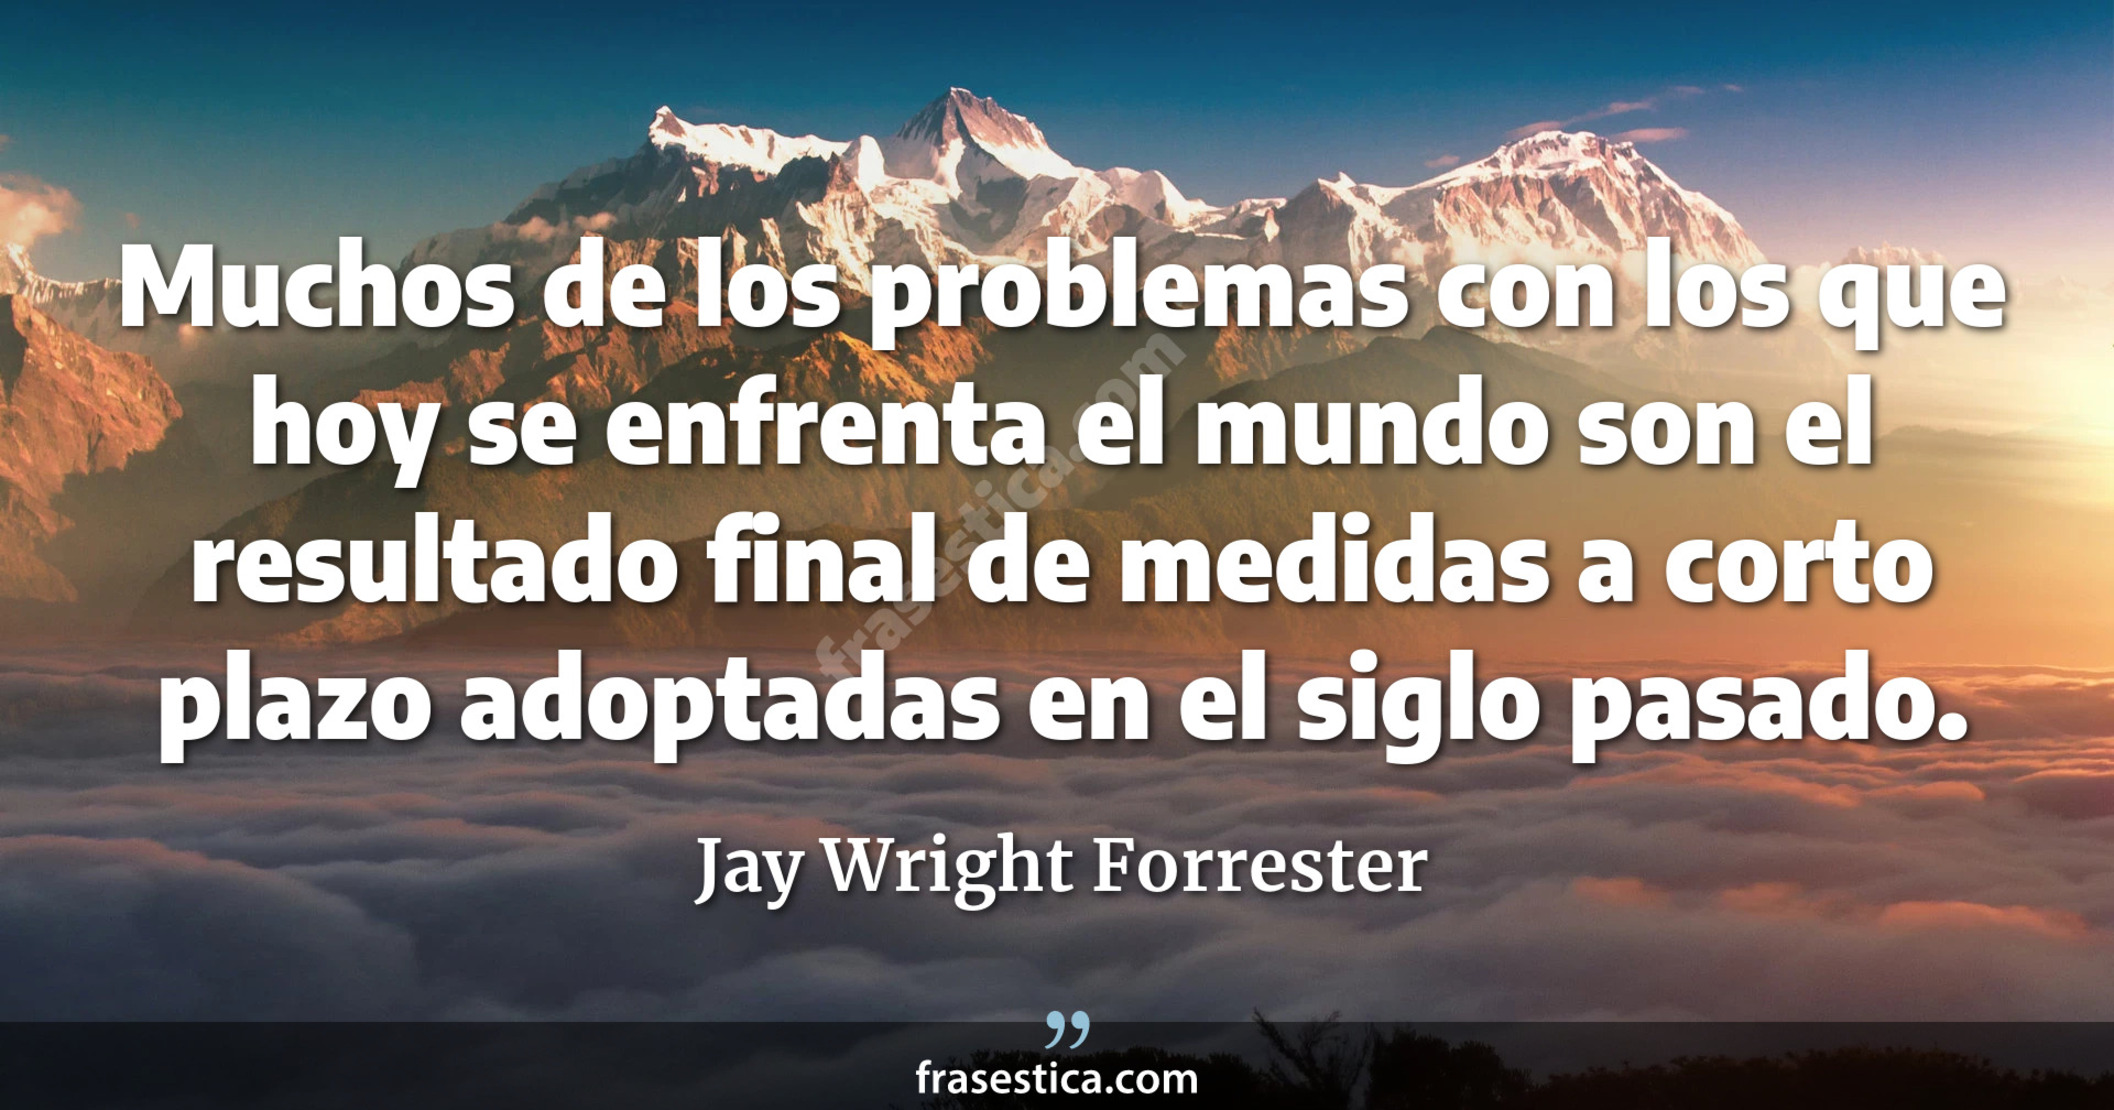 Muchos de los problemas con los que hoy se enfrenta el mundo son el resultado final de medidas a corto plazo adoptadas en el siglo pasado. - Jay Wright Forrester